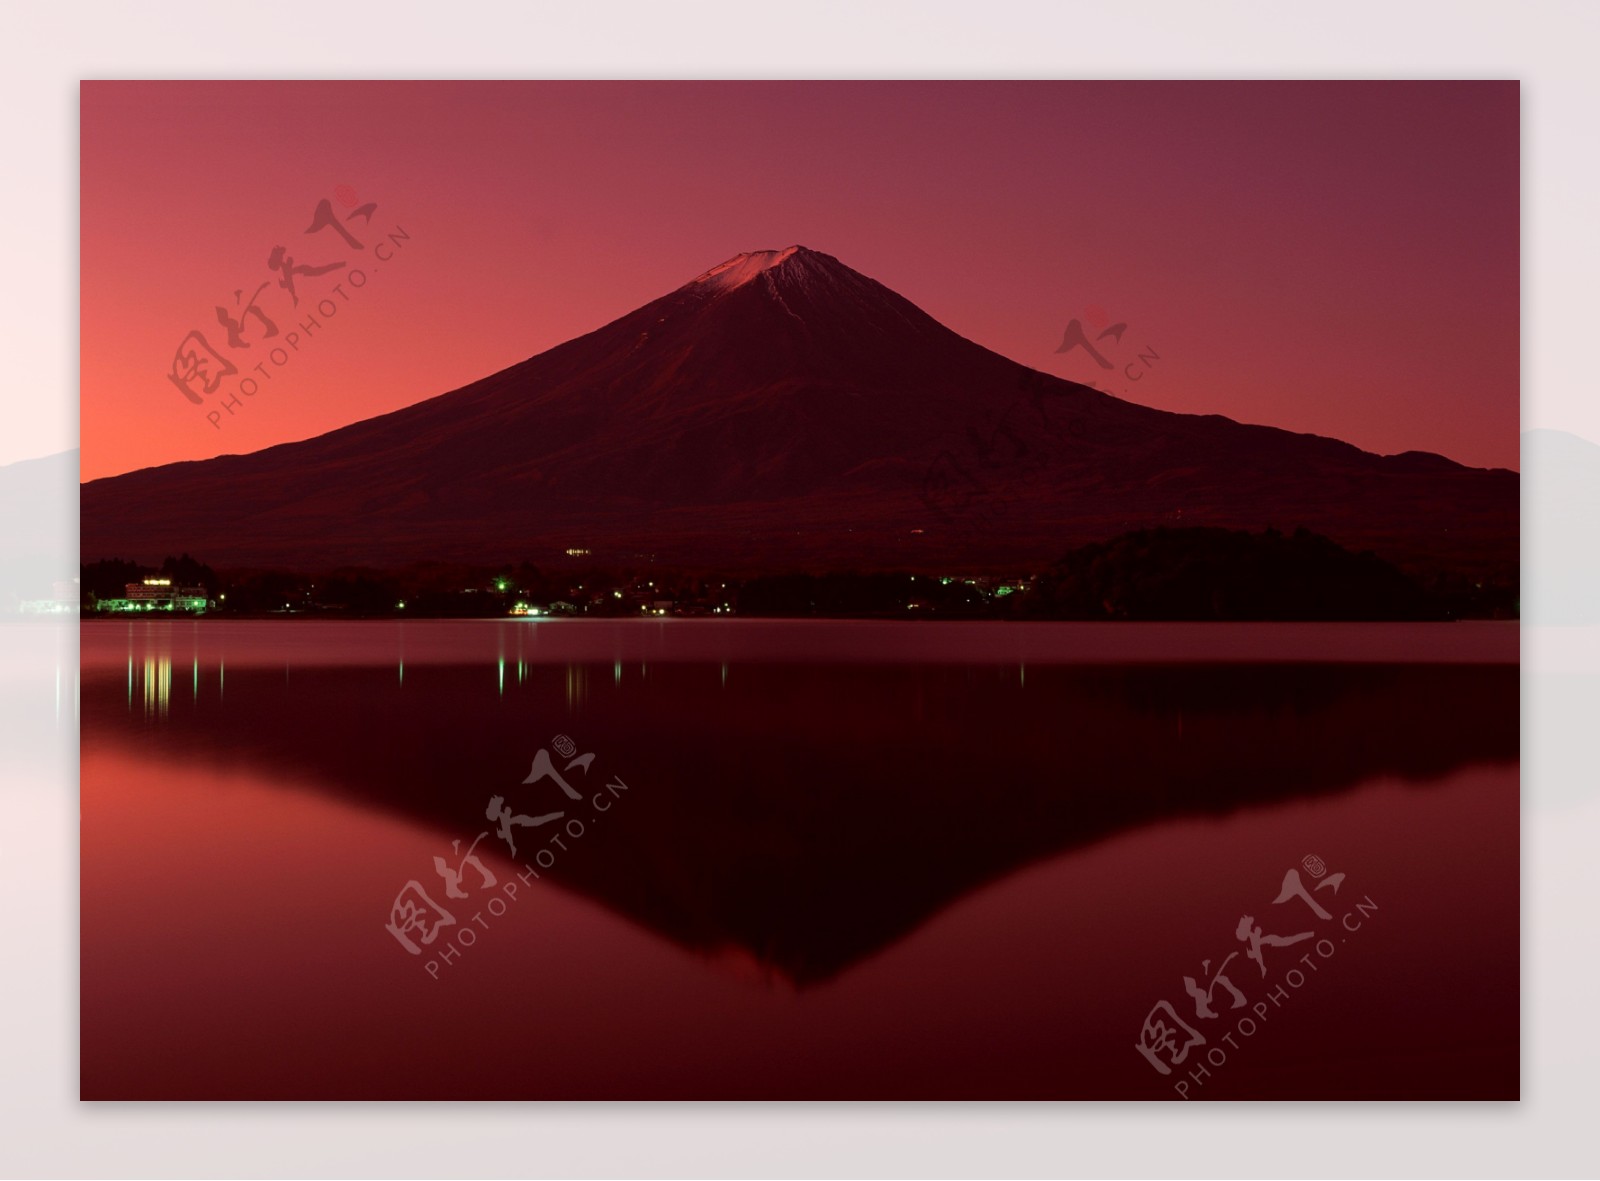 血色富士山图片